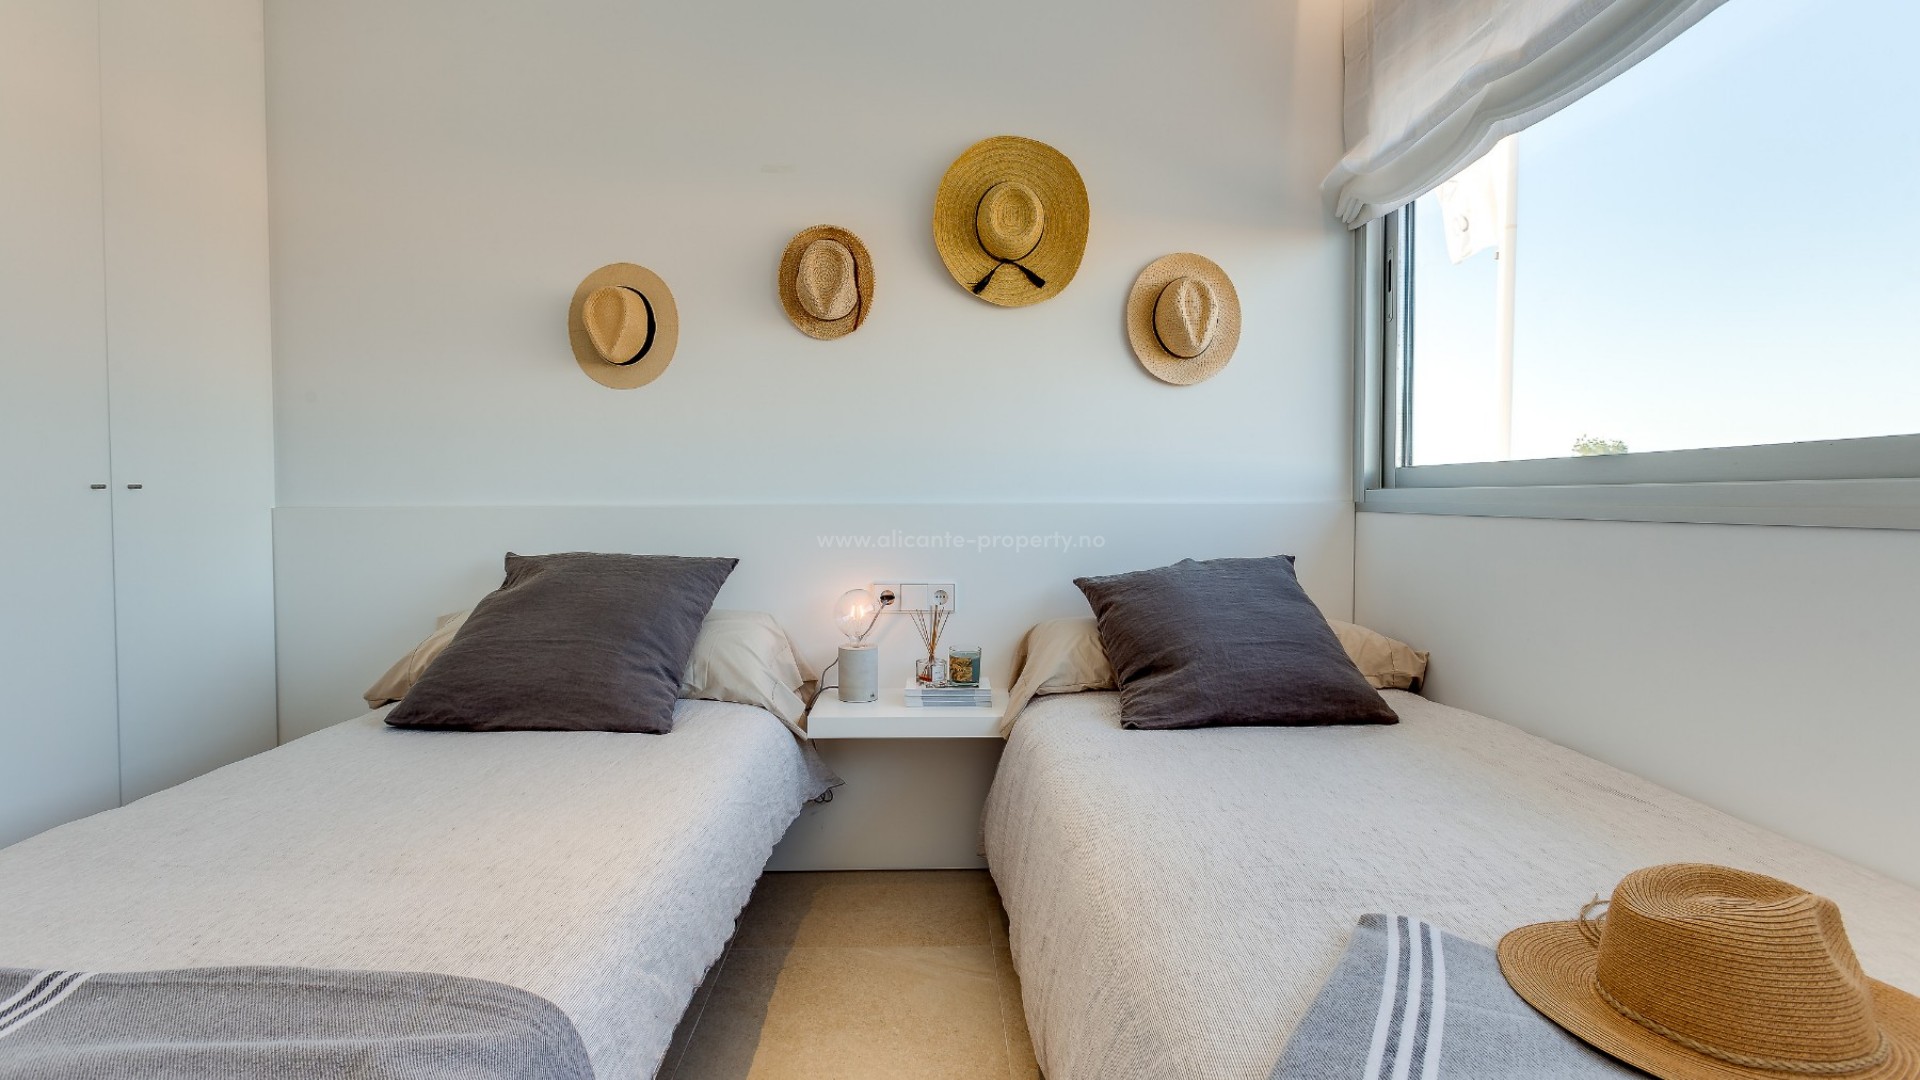 Luksus leilighet i Los Balcones,Torrevieja, 2doble soverom, 2 bad, romslig stue/spisestua, terrasse med privat basseng, 5 min til strender